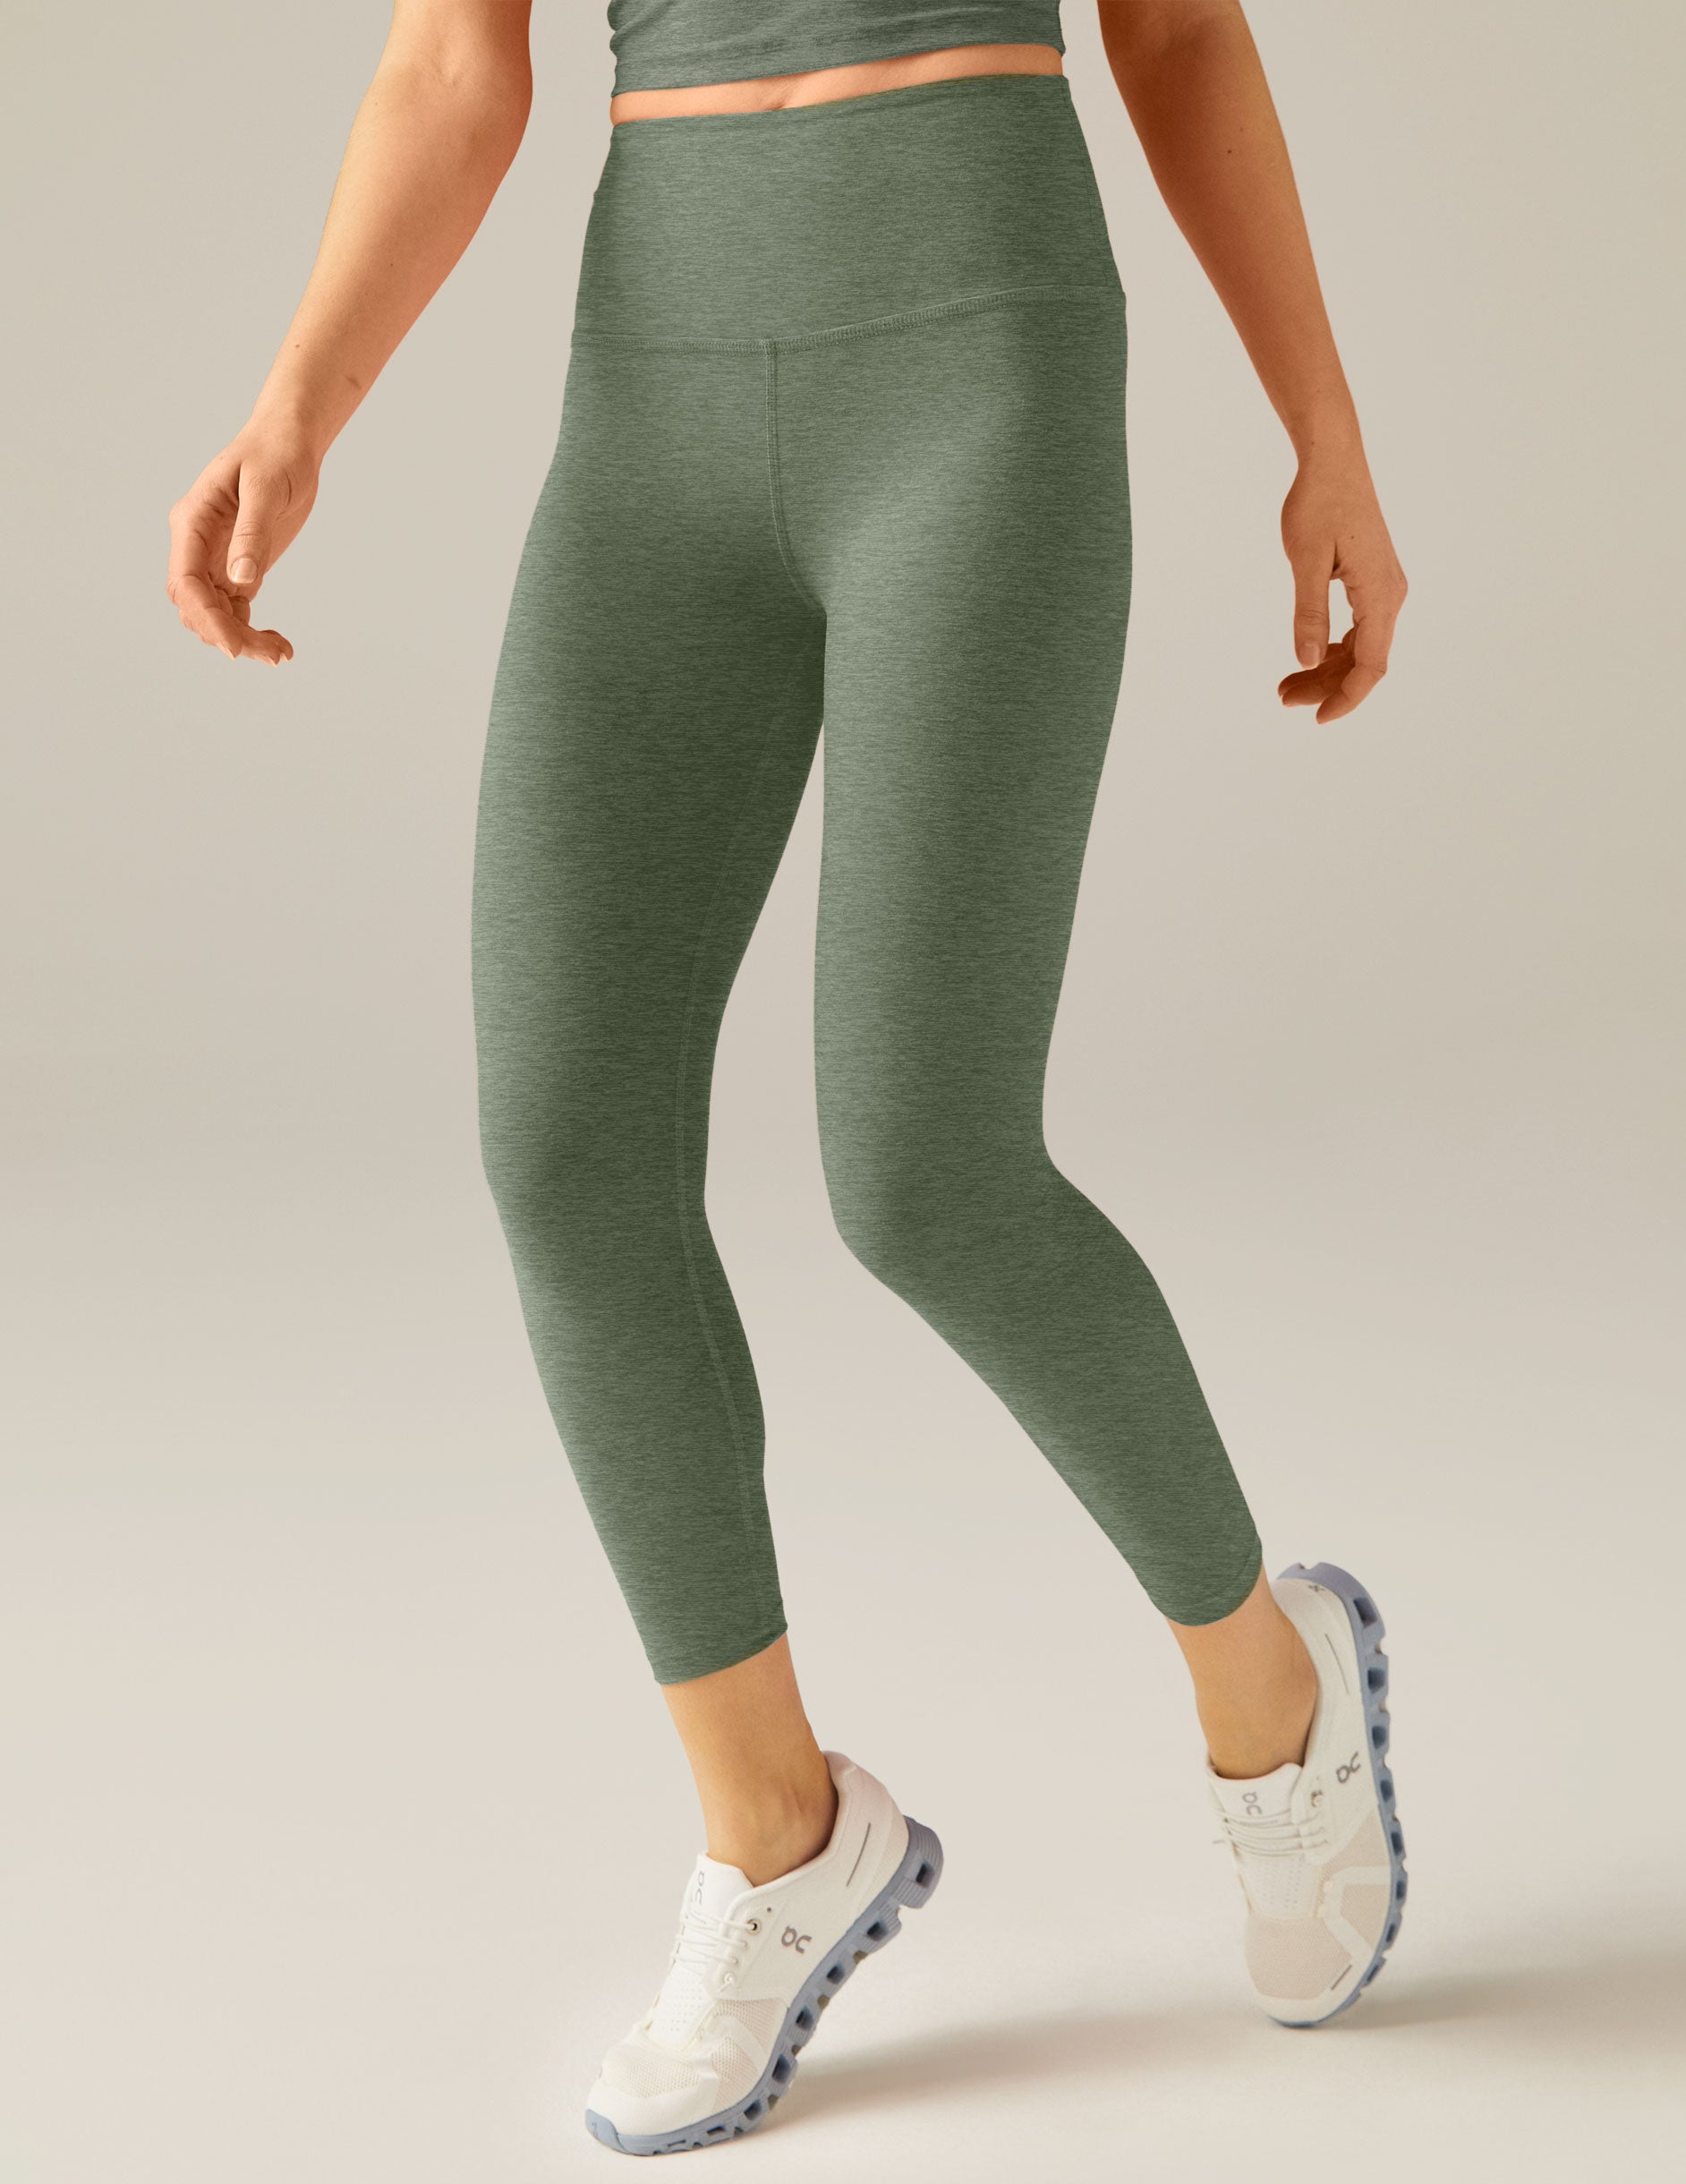 green high-waisted capri leggings. 